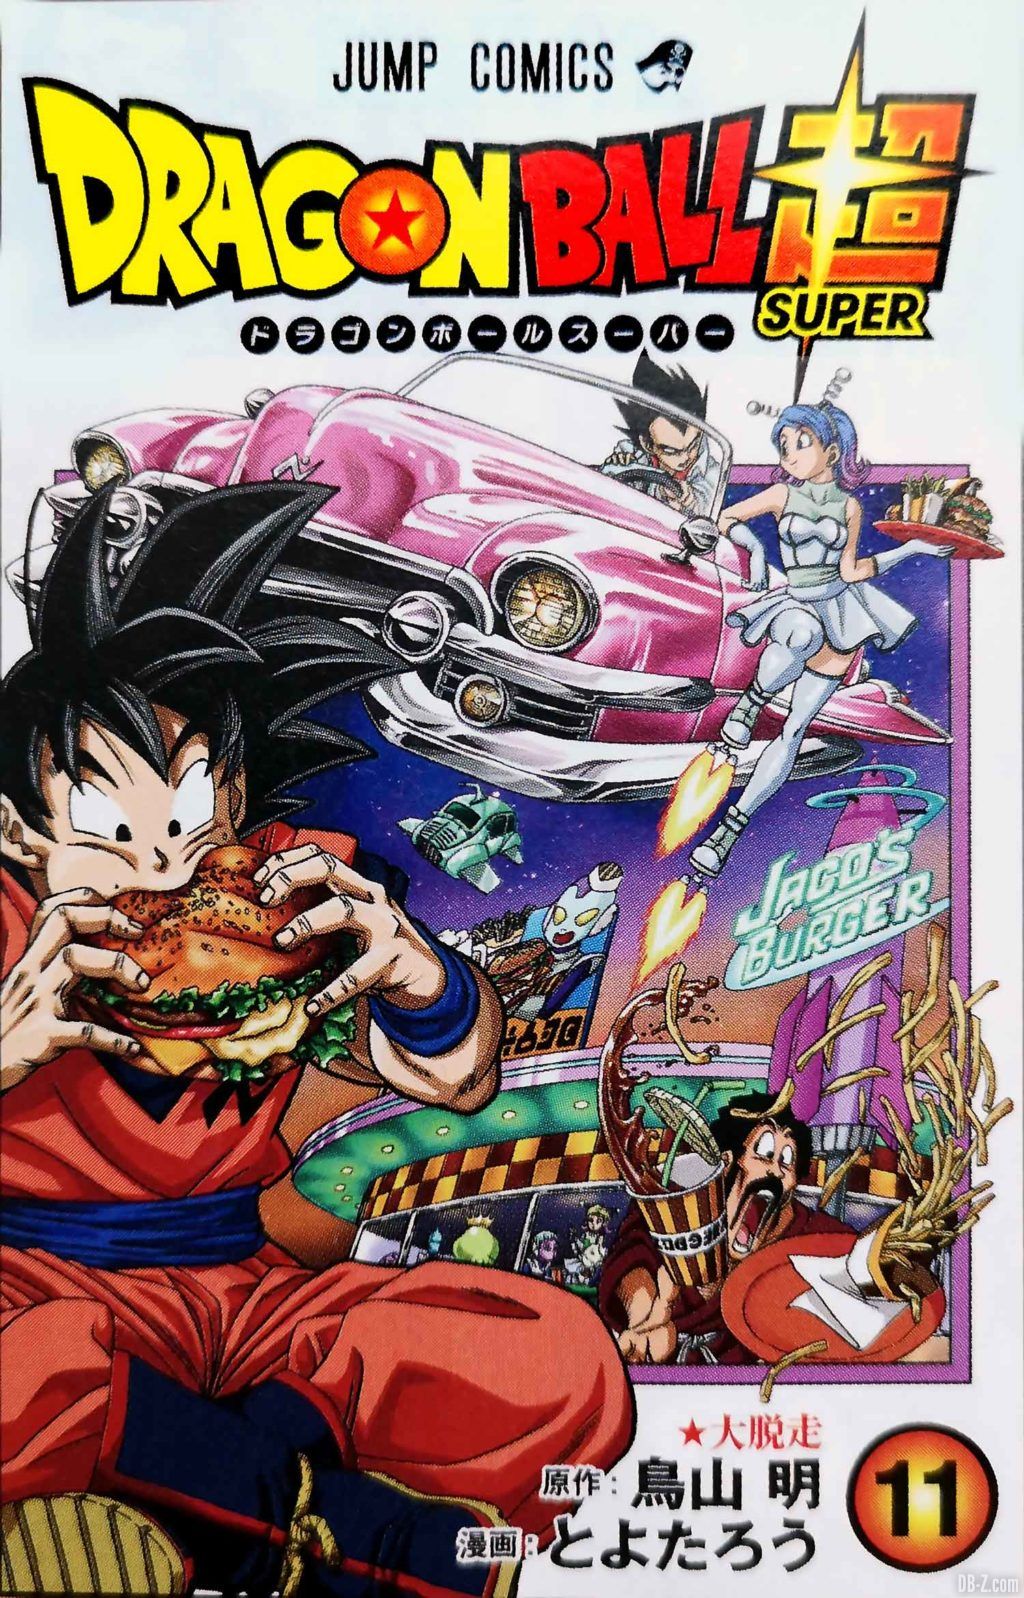 Dragon Ball Super TOME 11 : Cover, Prix, et Date de Sortie au Japon